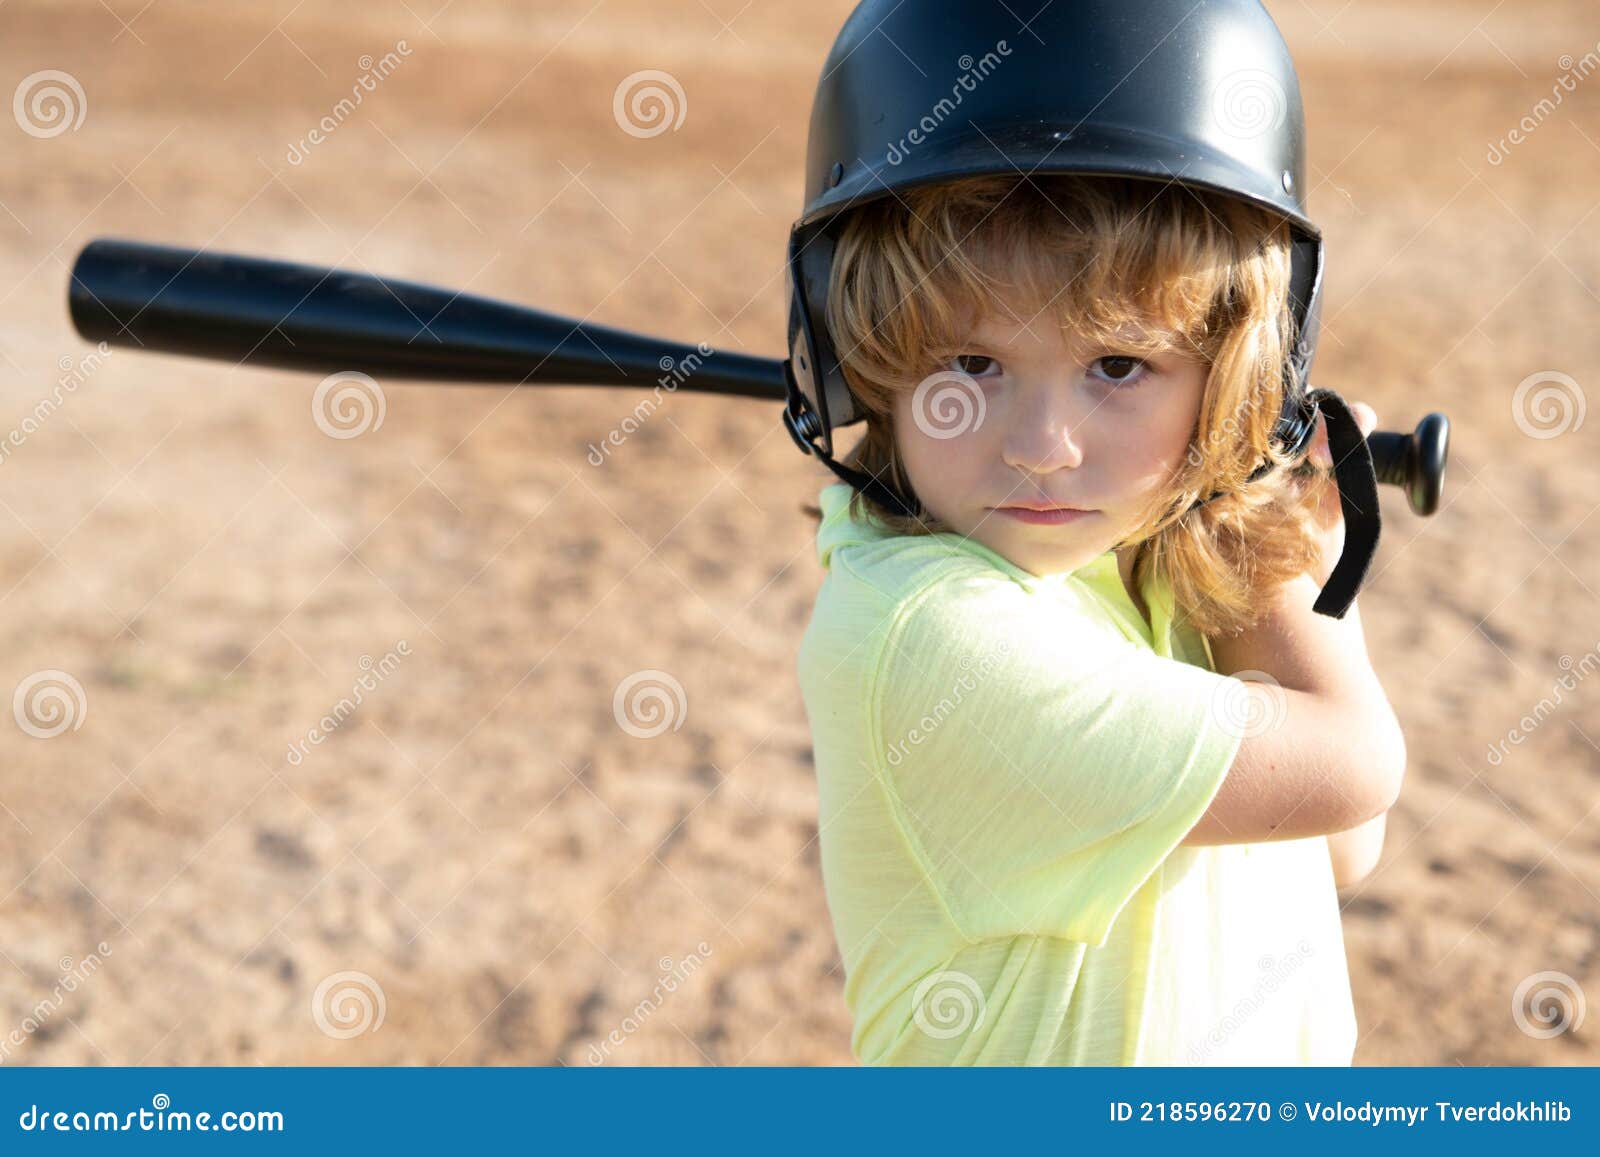 Ijzig Handig In het algemeen Grappig Kind Met Knuppel in Een Honkbalwedstrijd. Kinderportret Sluiten.  Stock Foto - Image of kloppen, helm: 218596270